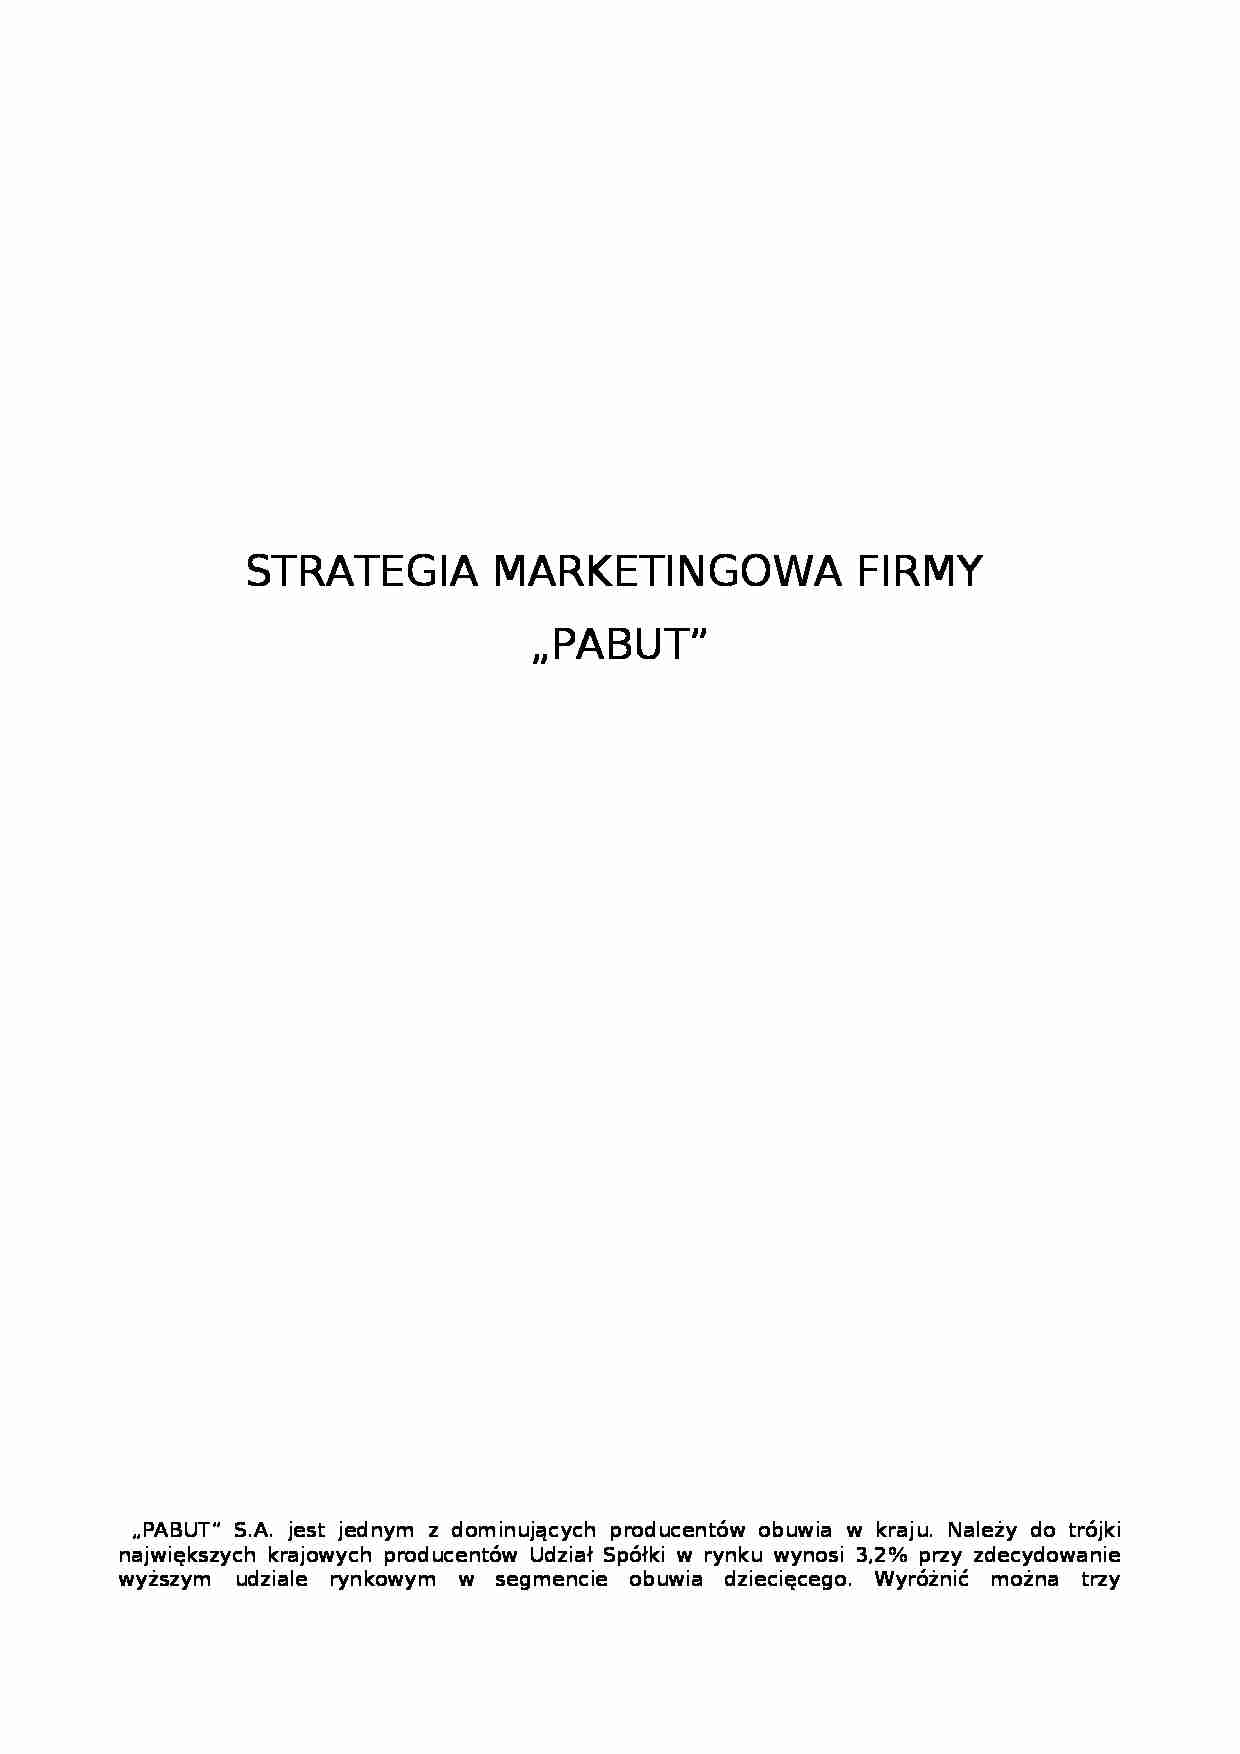 Strategia marketingowa firmy - produkcja obuwia - strona 1